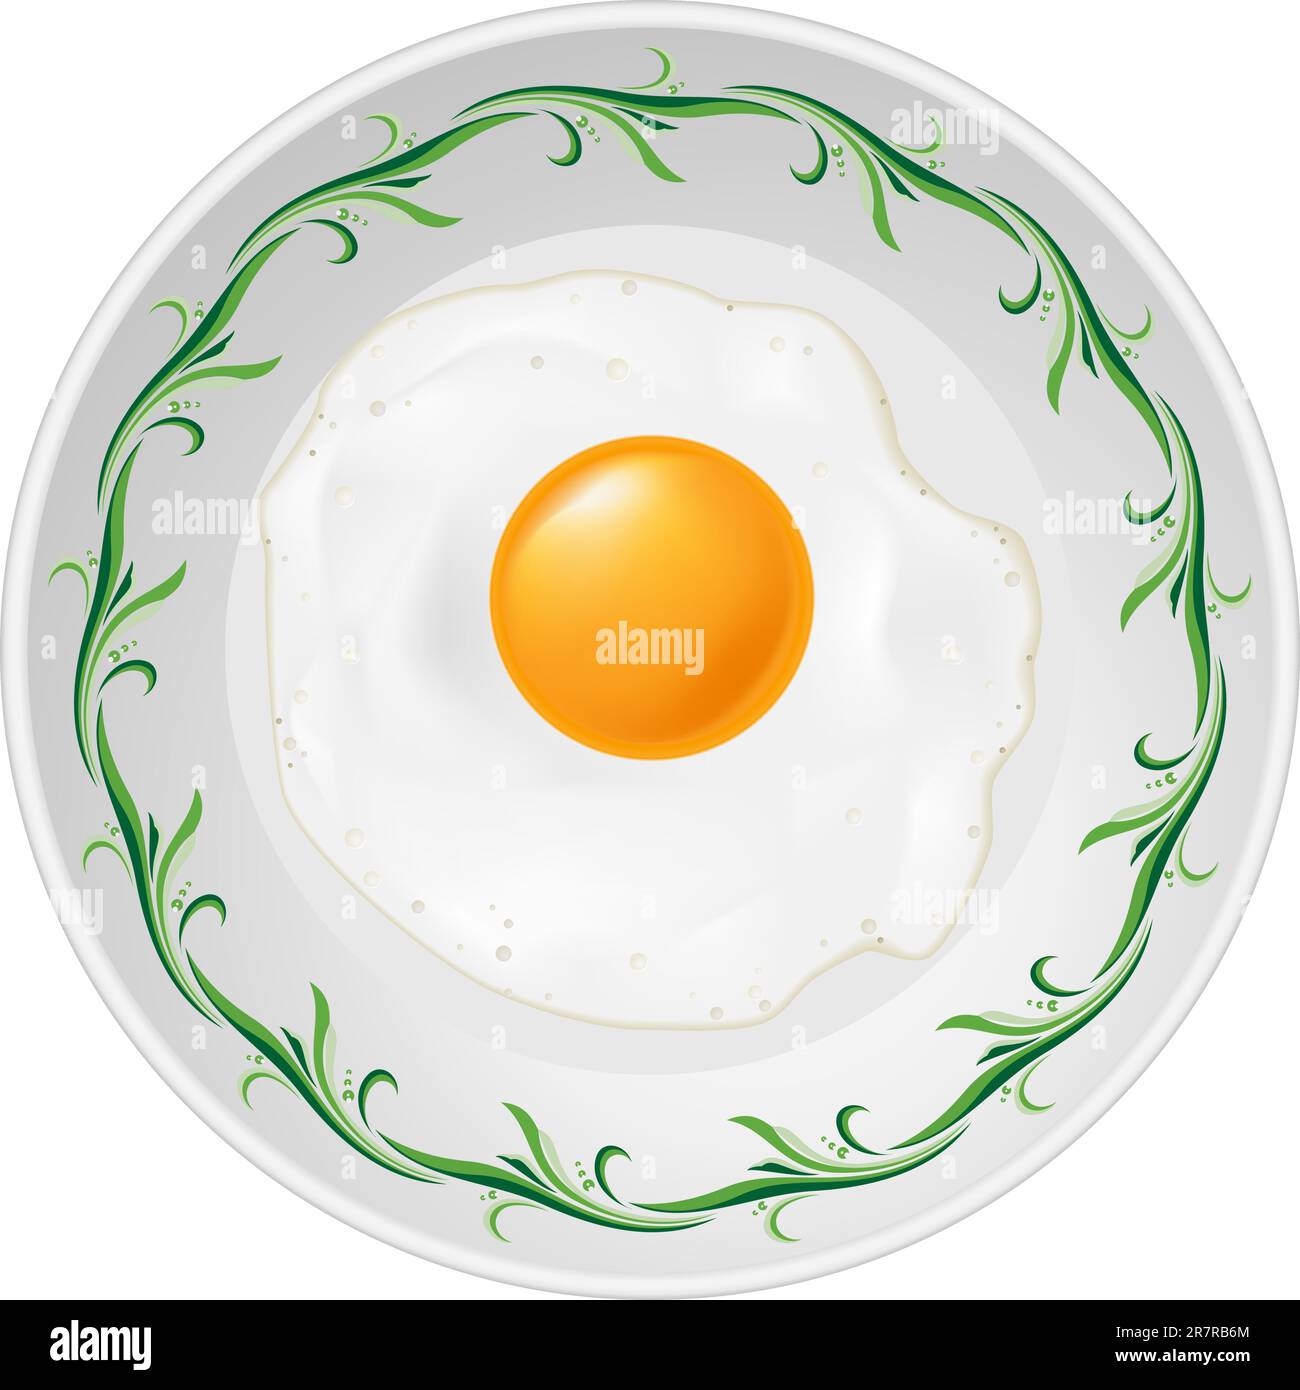 Fried egg on plate. Illustration on white background Stock Vector